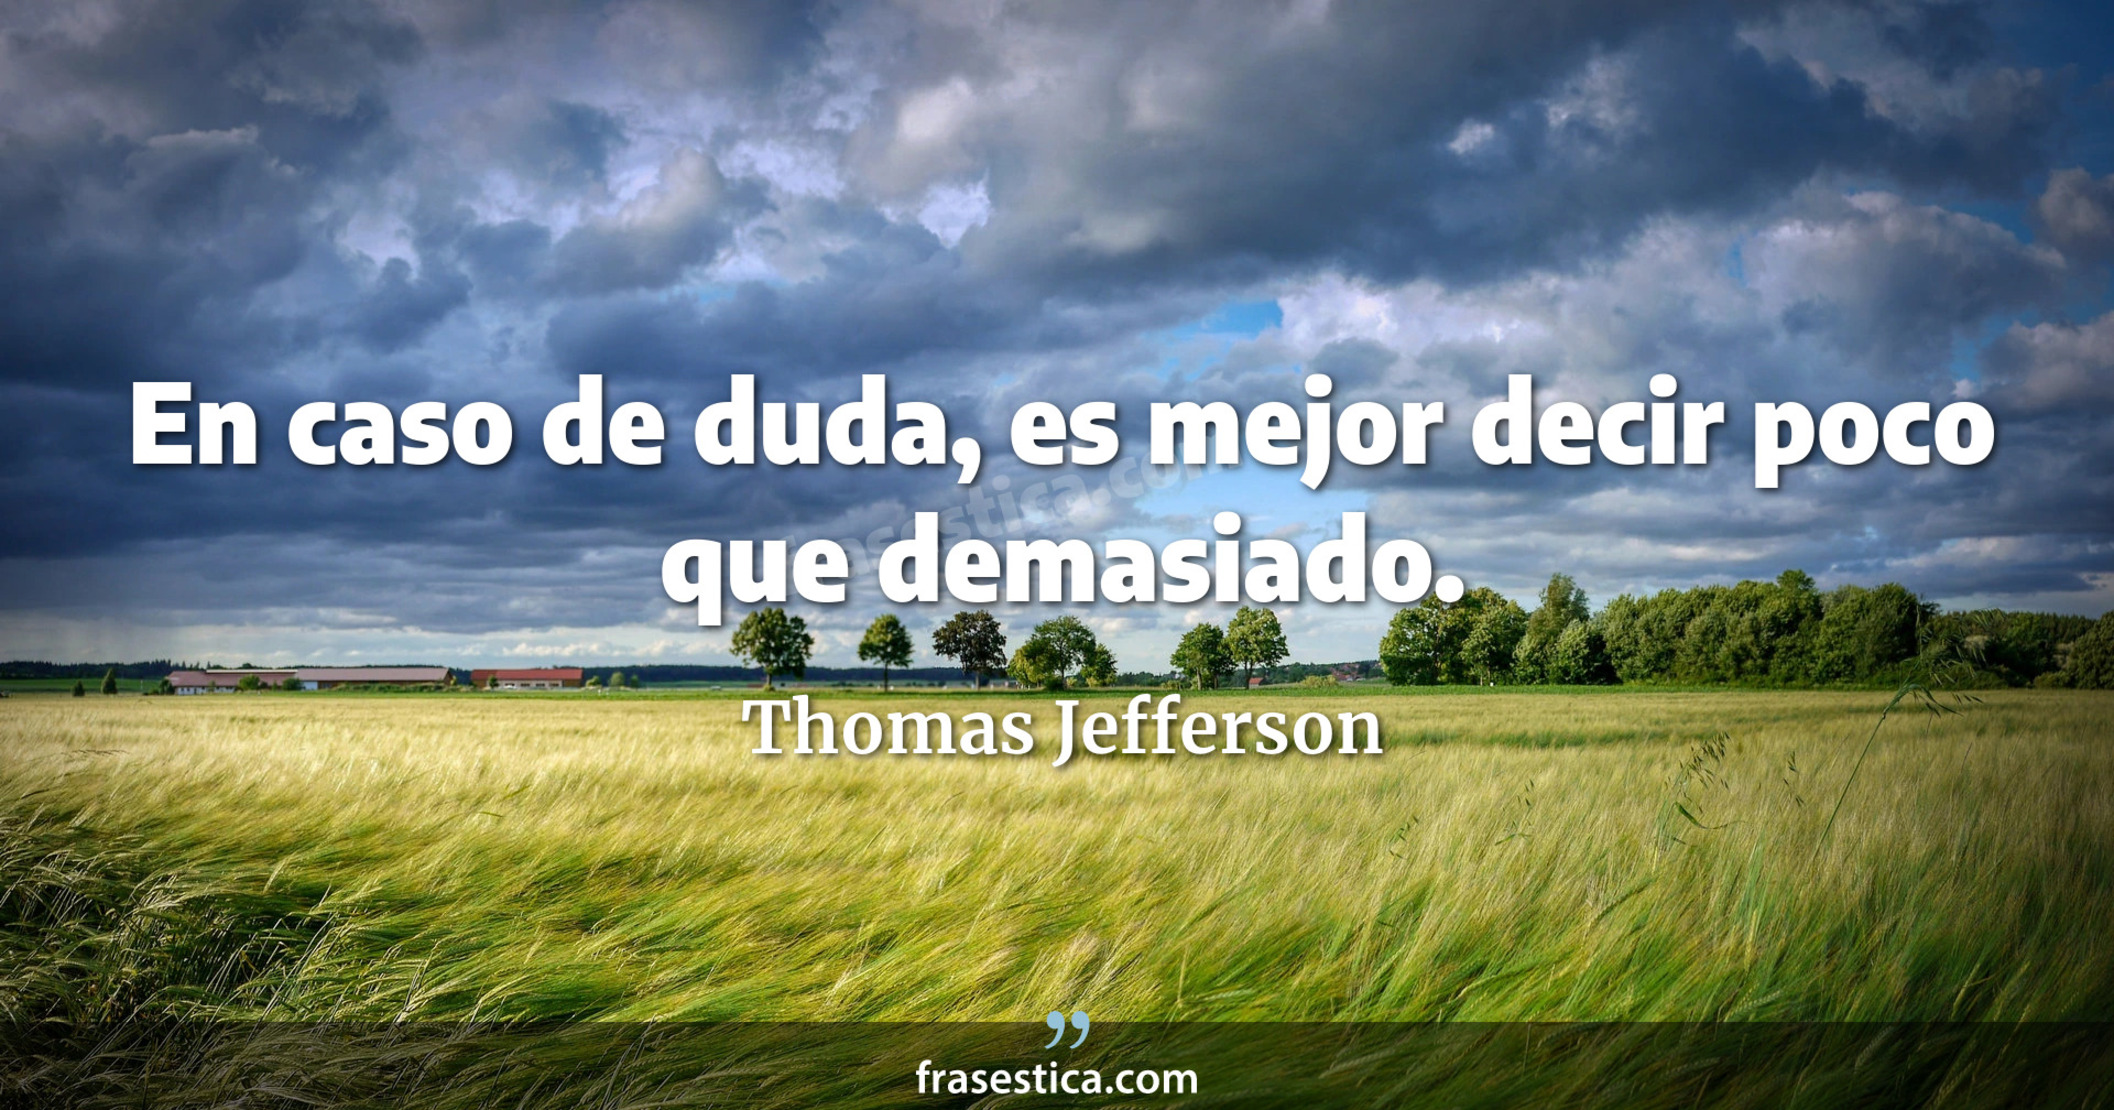 En caso de duda, es mejor decir poco que demasiado. - Thomas Jefferson